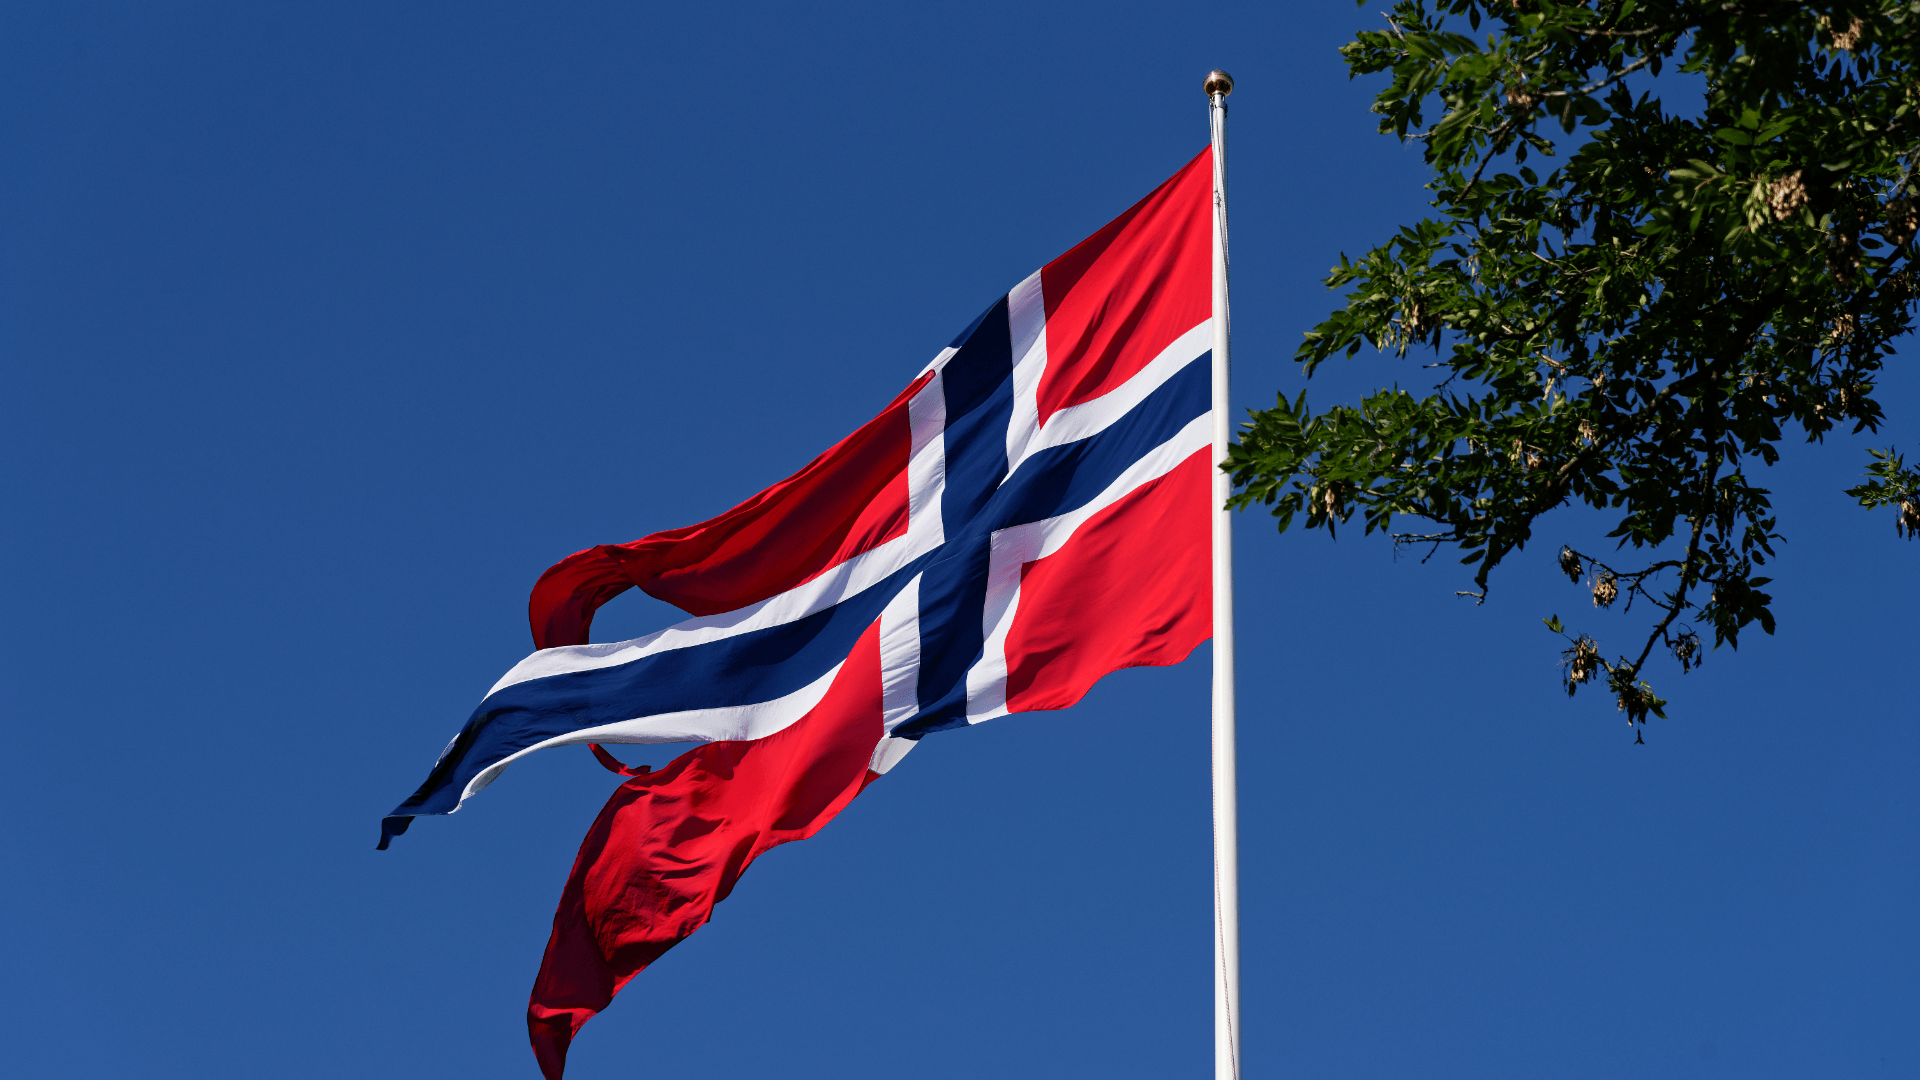 Россияне не смогут въехать в Норвегию по туристической визе